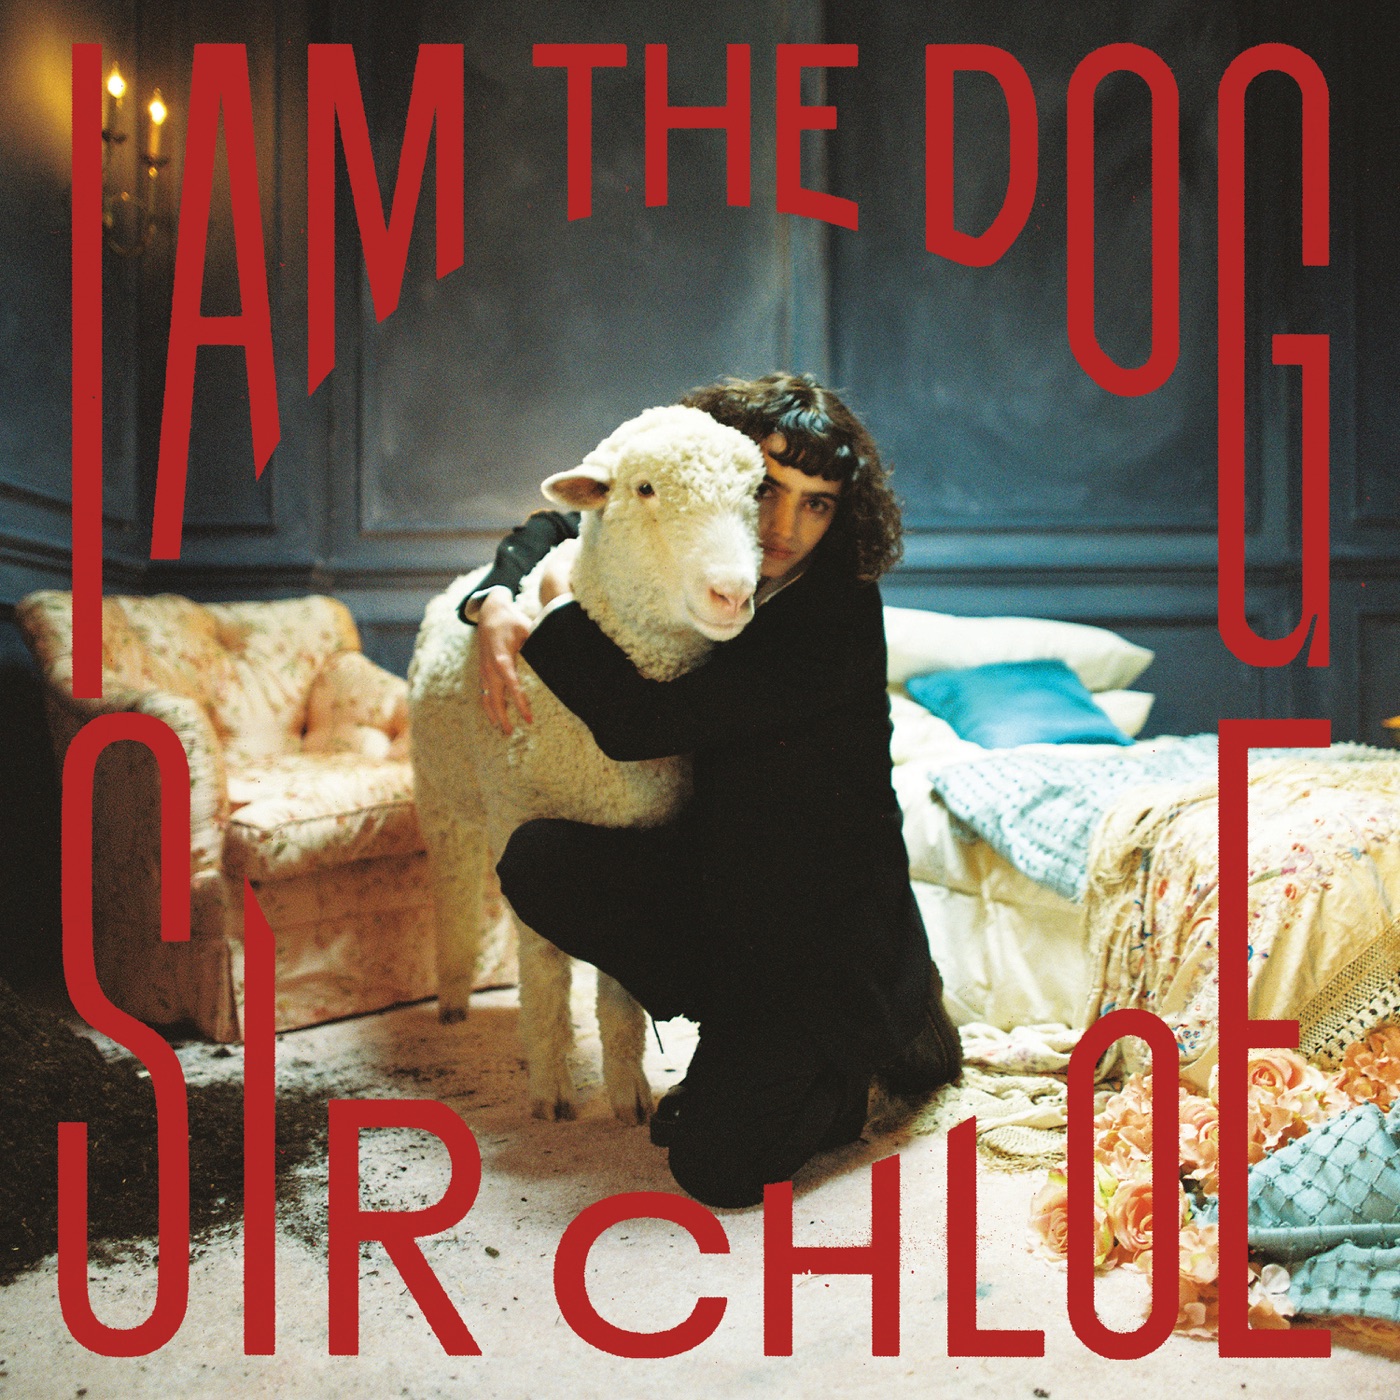 I Am The Dog by Sir Chloe